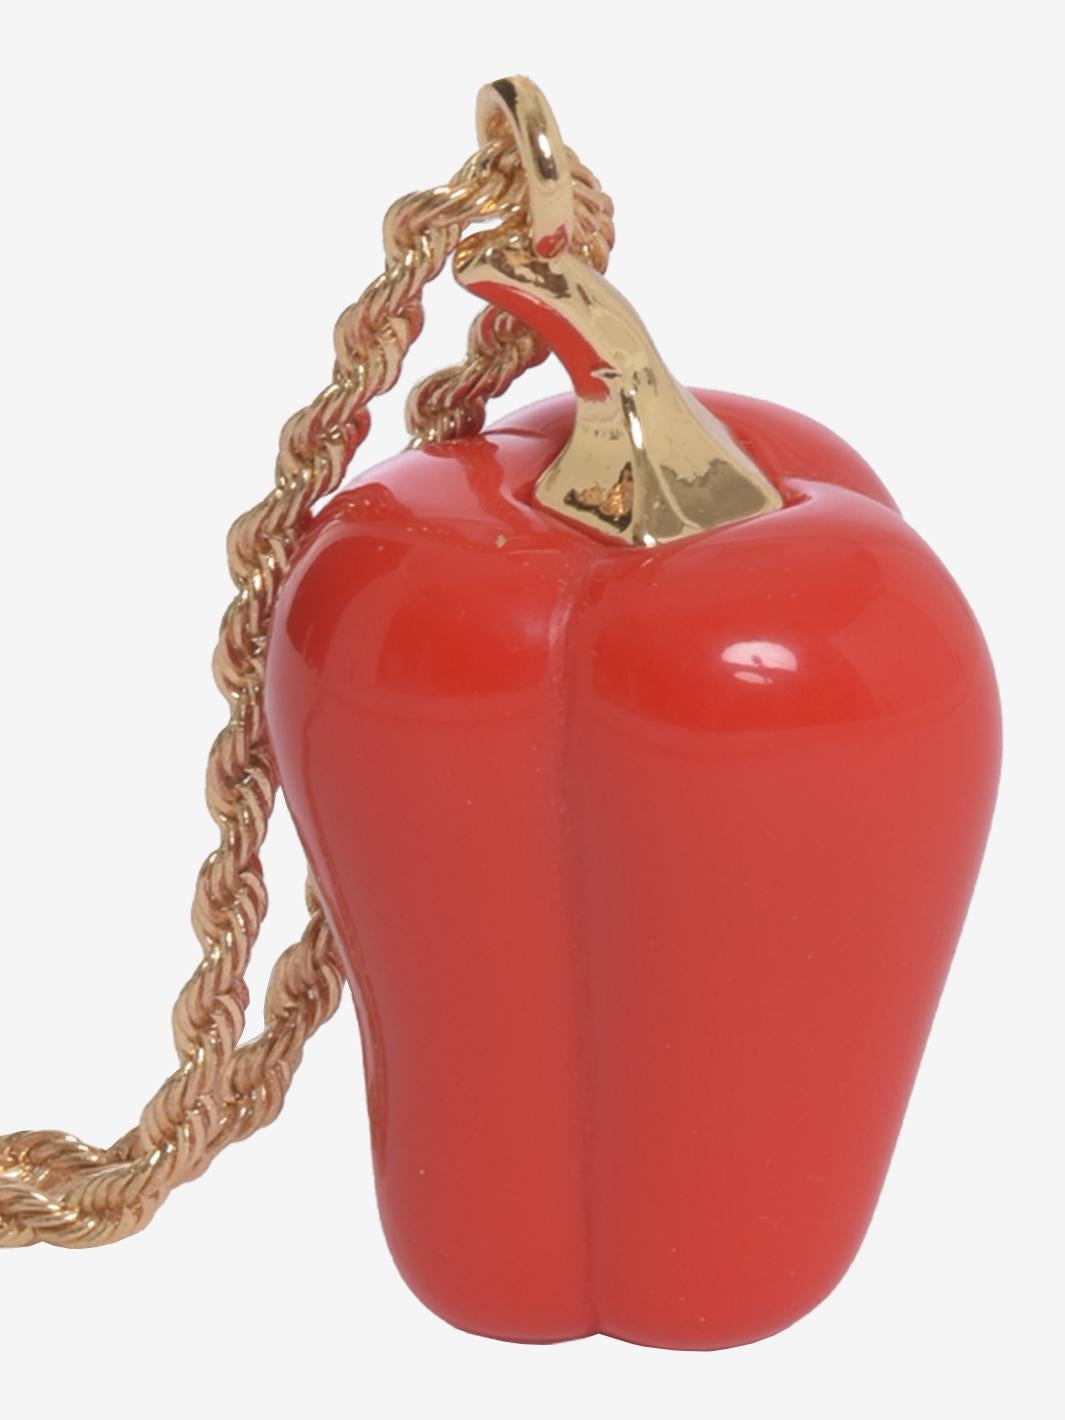 Le collier Red Bell Pepper de Kenneth Jay Lane est composé d'un poivron en résine rouge décoré d'un moulage en étain américain plaqué or de Hamilton. 
Lane a commencé à créer des bijoux et a lancé son entreprise en 1963 en produisant des chaussures